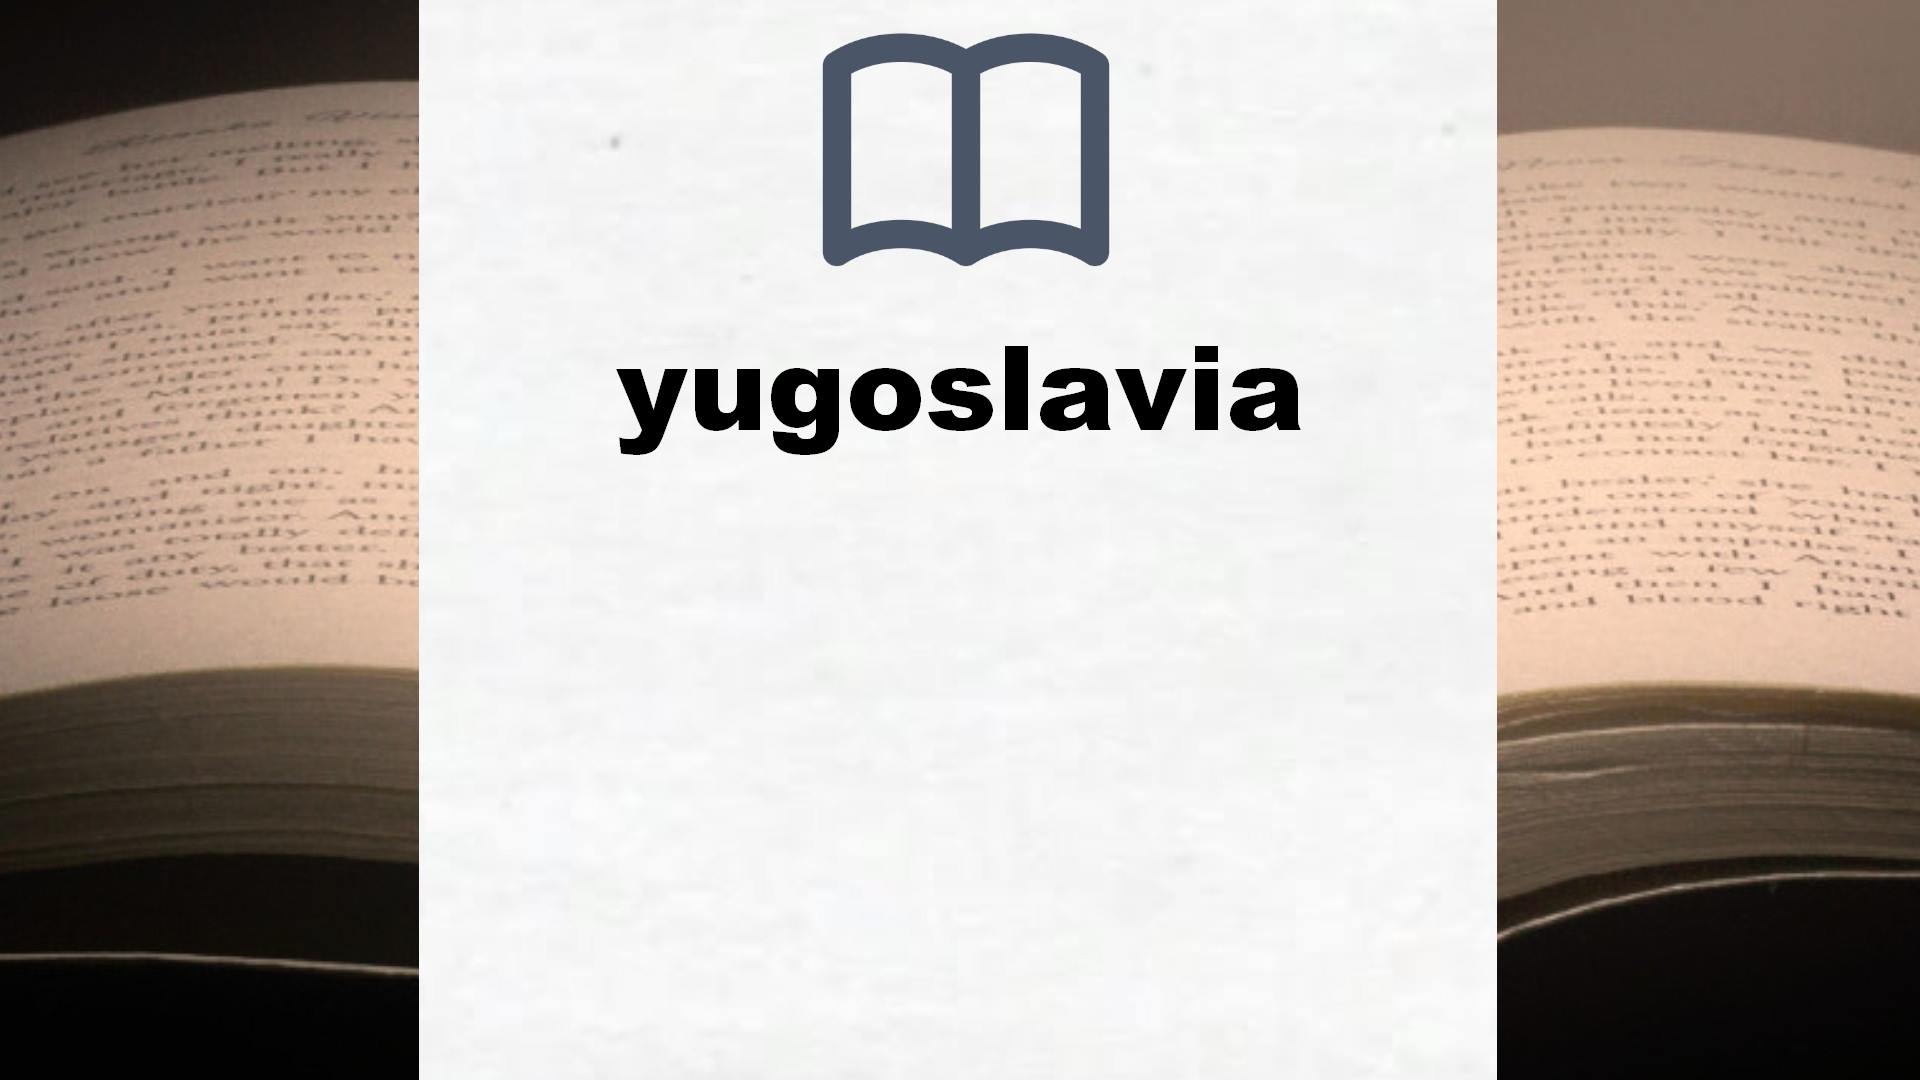 Libros sobre yugoslavia